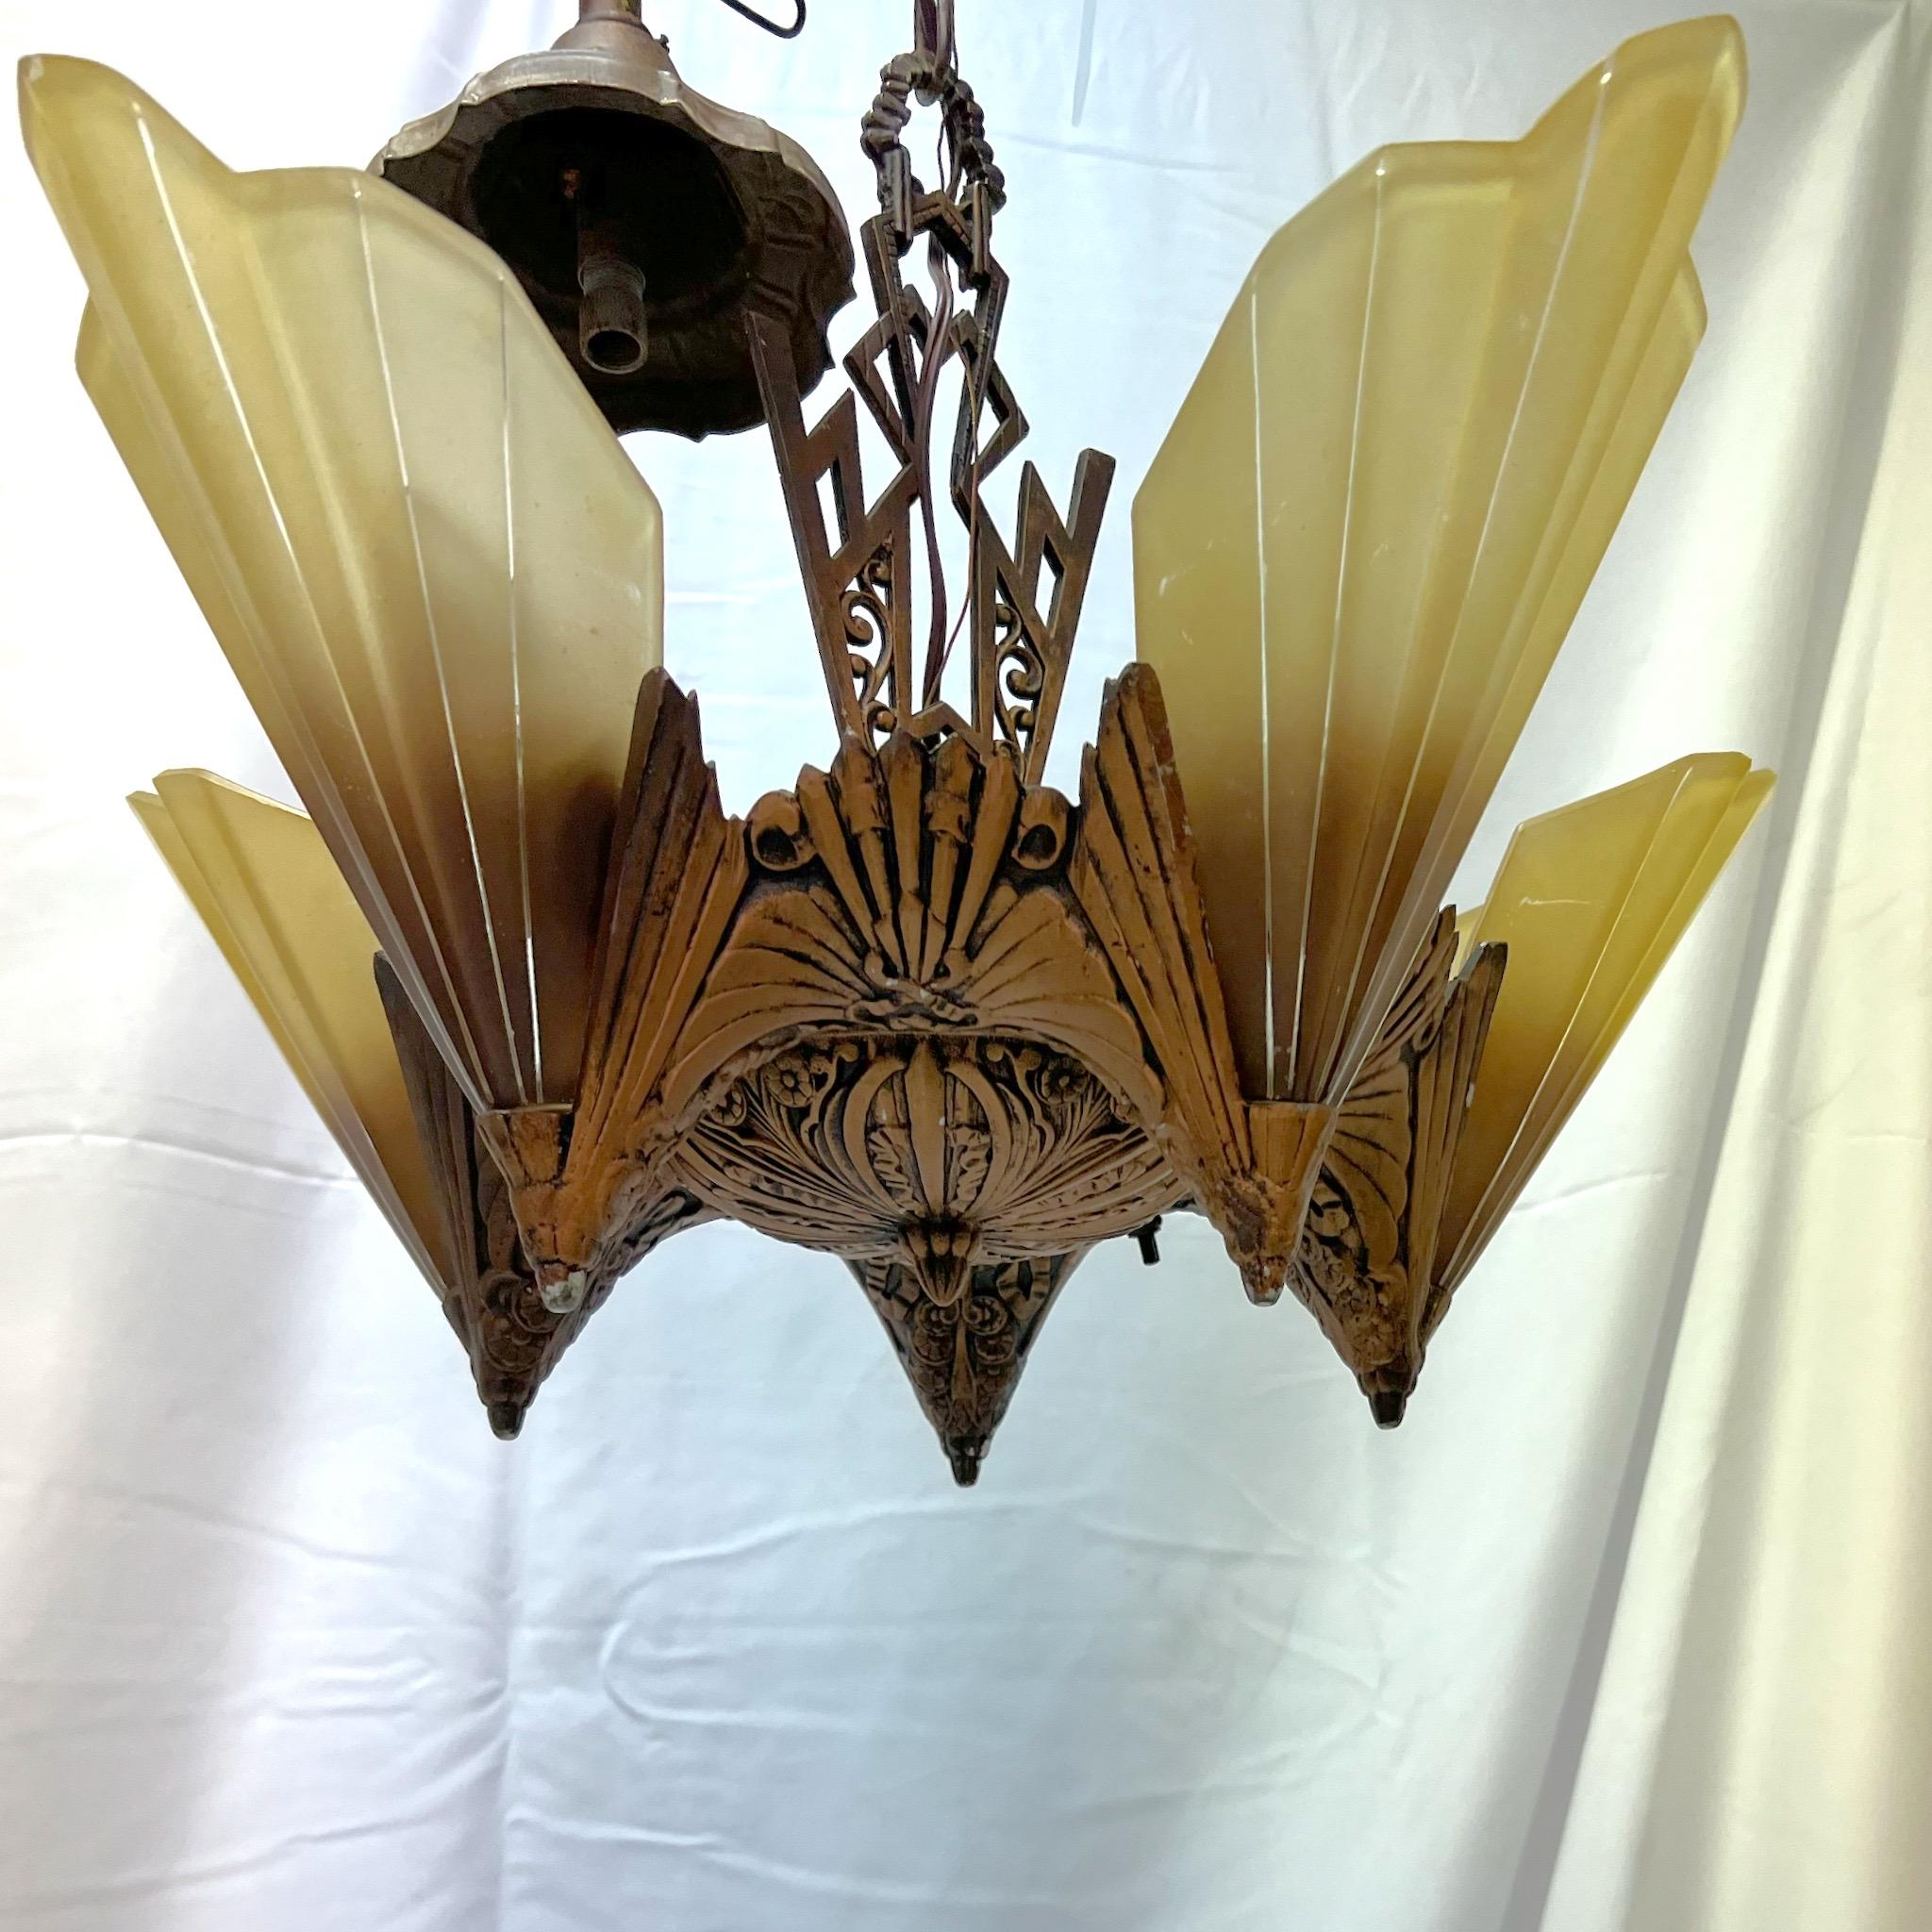 Ein Paar atemberaubende antike Art-Deco-Kronleuchter mit fünf Lampenschirmen aus den 1930er Jahren, hergestellt von der Midwest Manufacturing Company. Die Kronleuchter beginnen mit einem dekorativen Baldachin, der in einer Kette nach unten verläuft